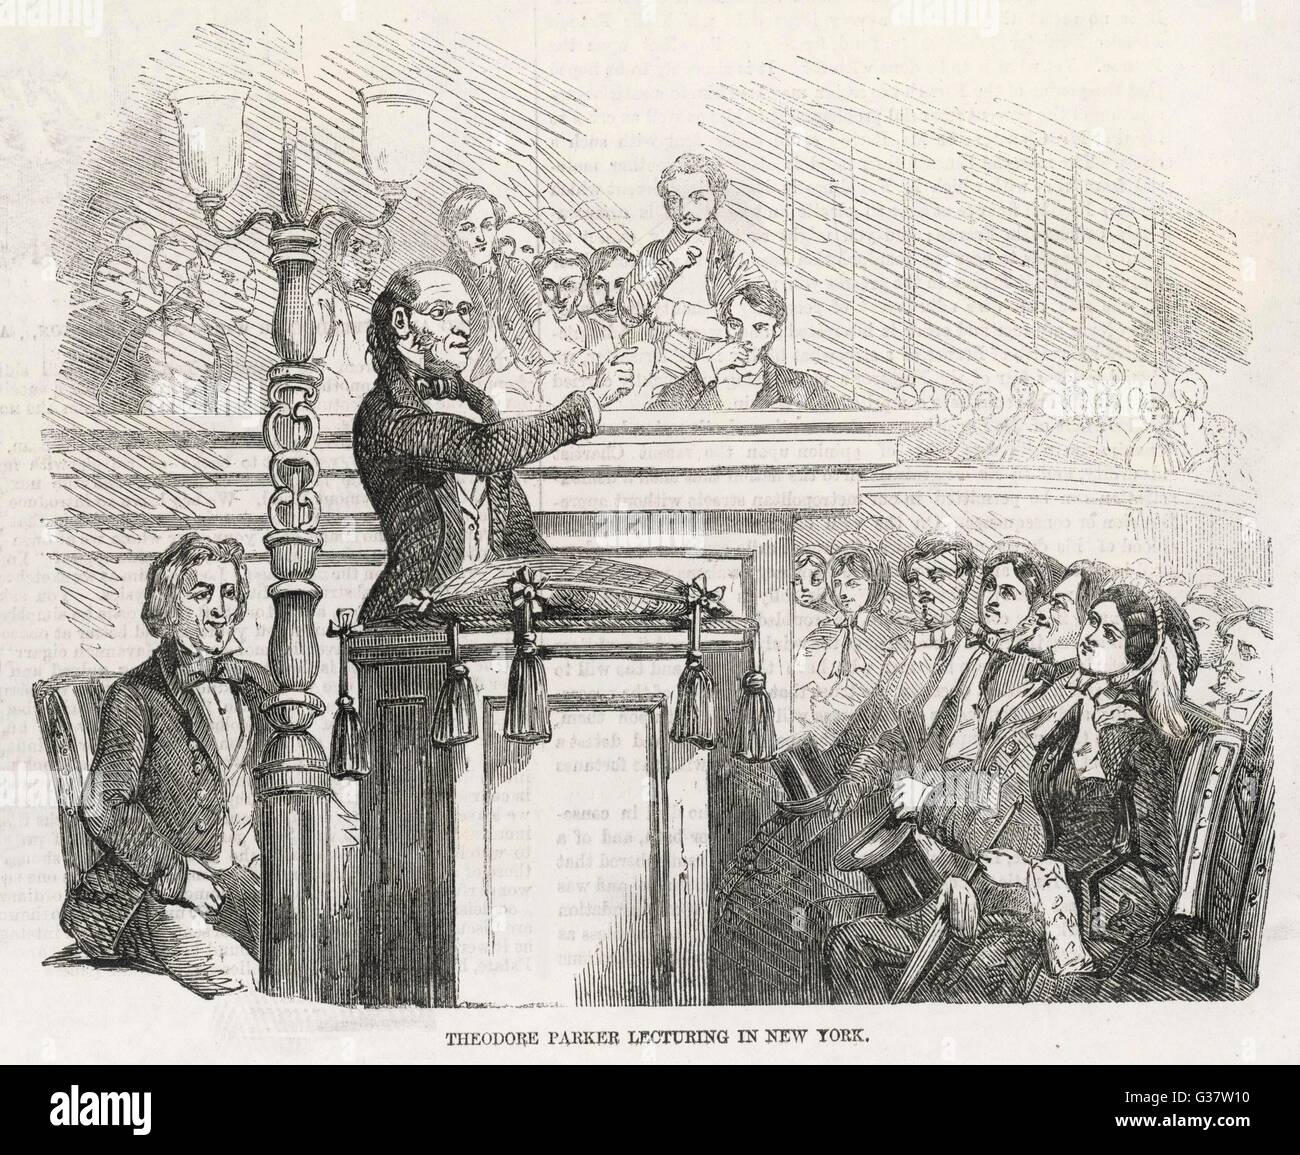 Agitazione di riforma NEGLI STATI UNITI D'AMERICA - Theodore Parker lezioni in New York ad un pubblico di simpatizzanti data: 1856 Foto Stock